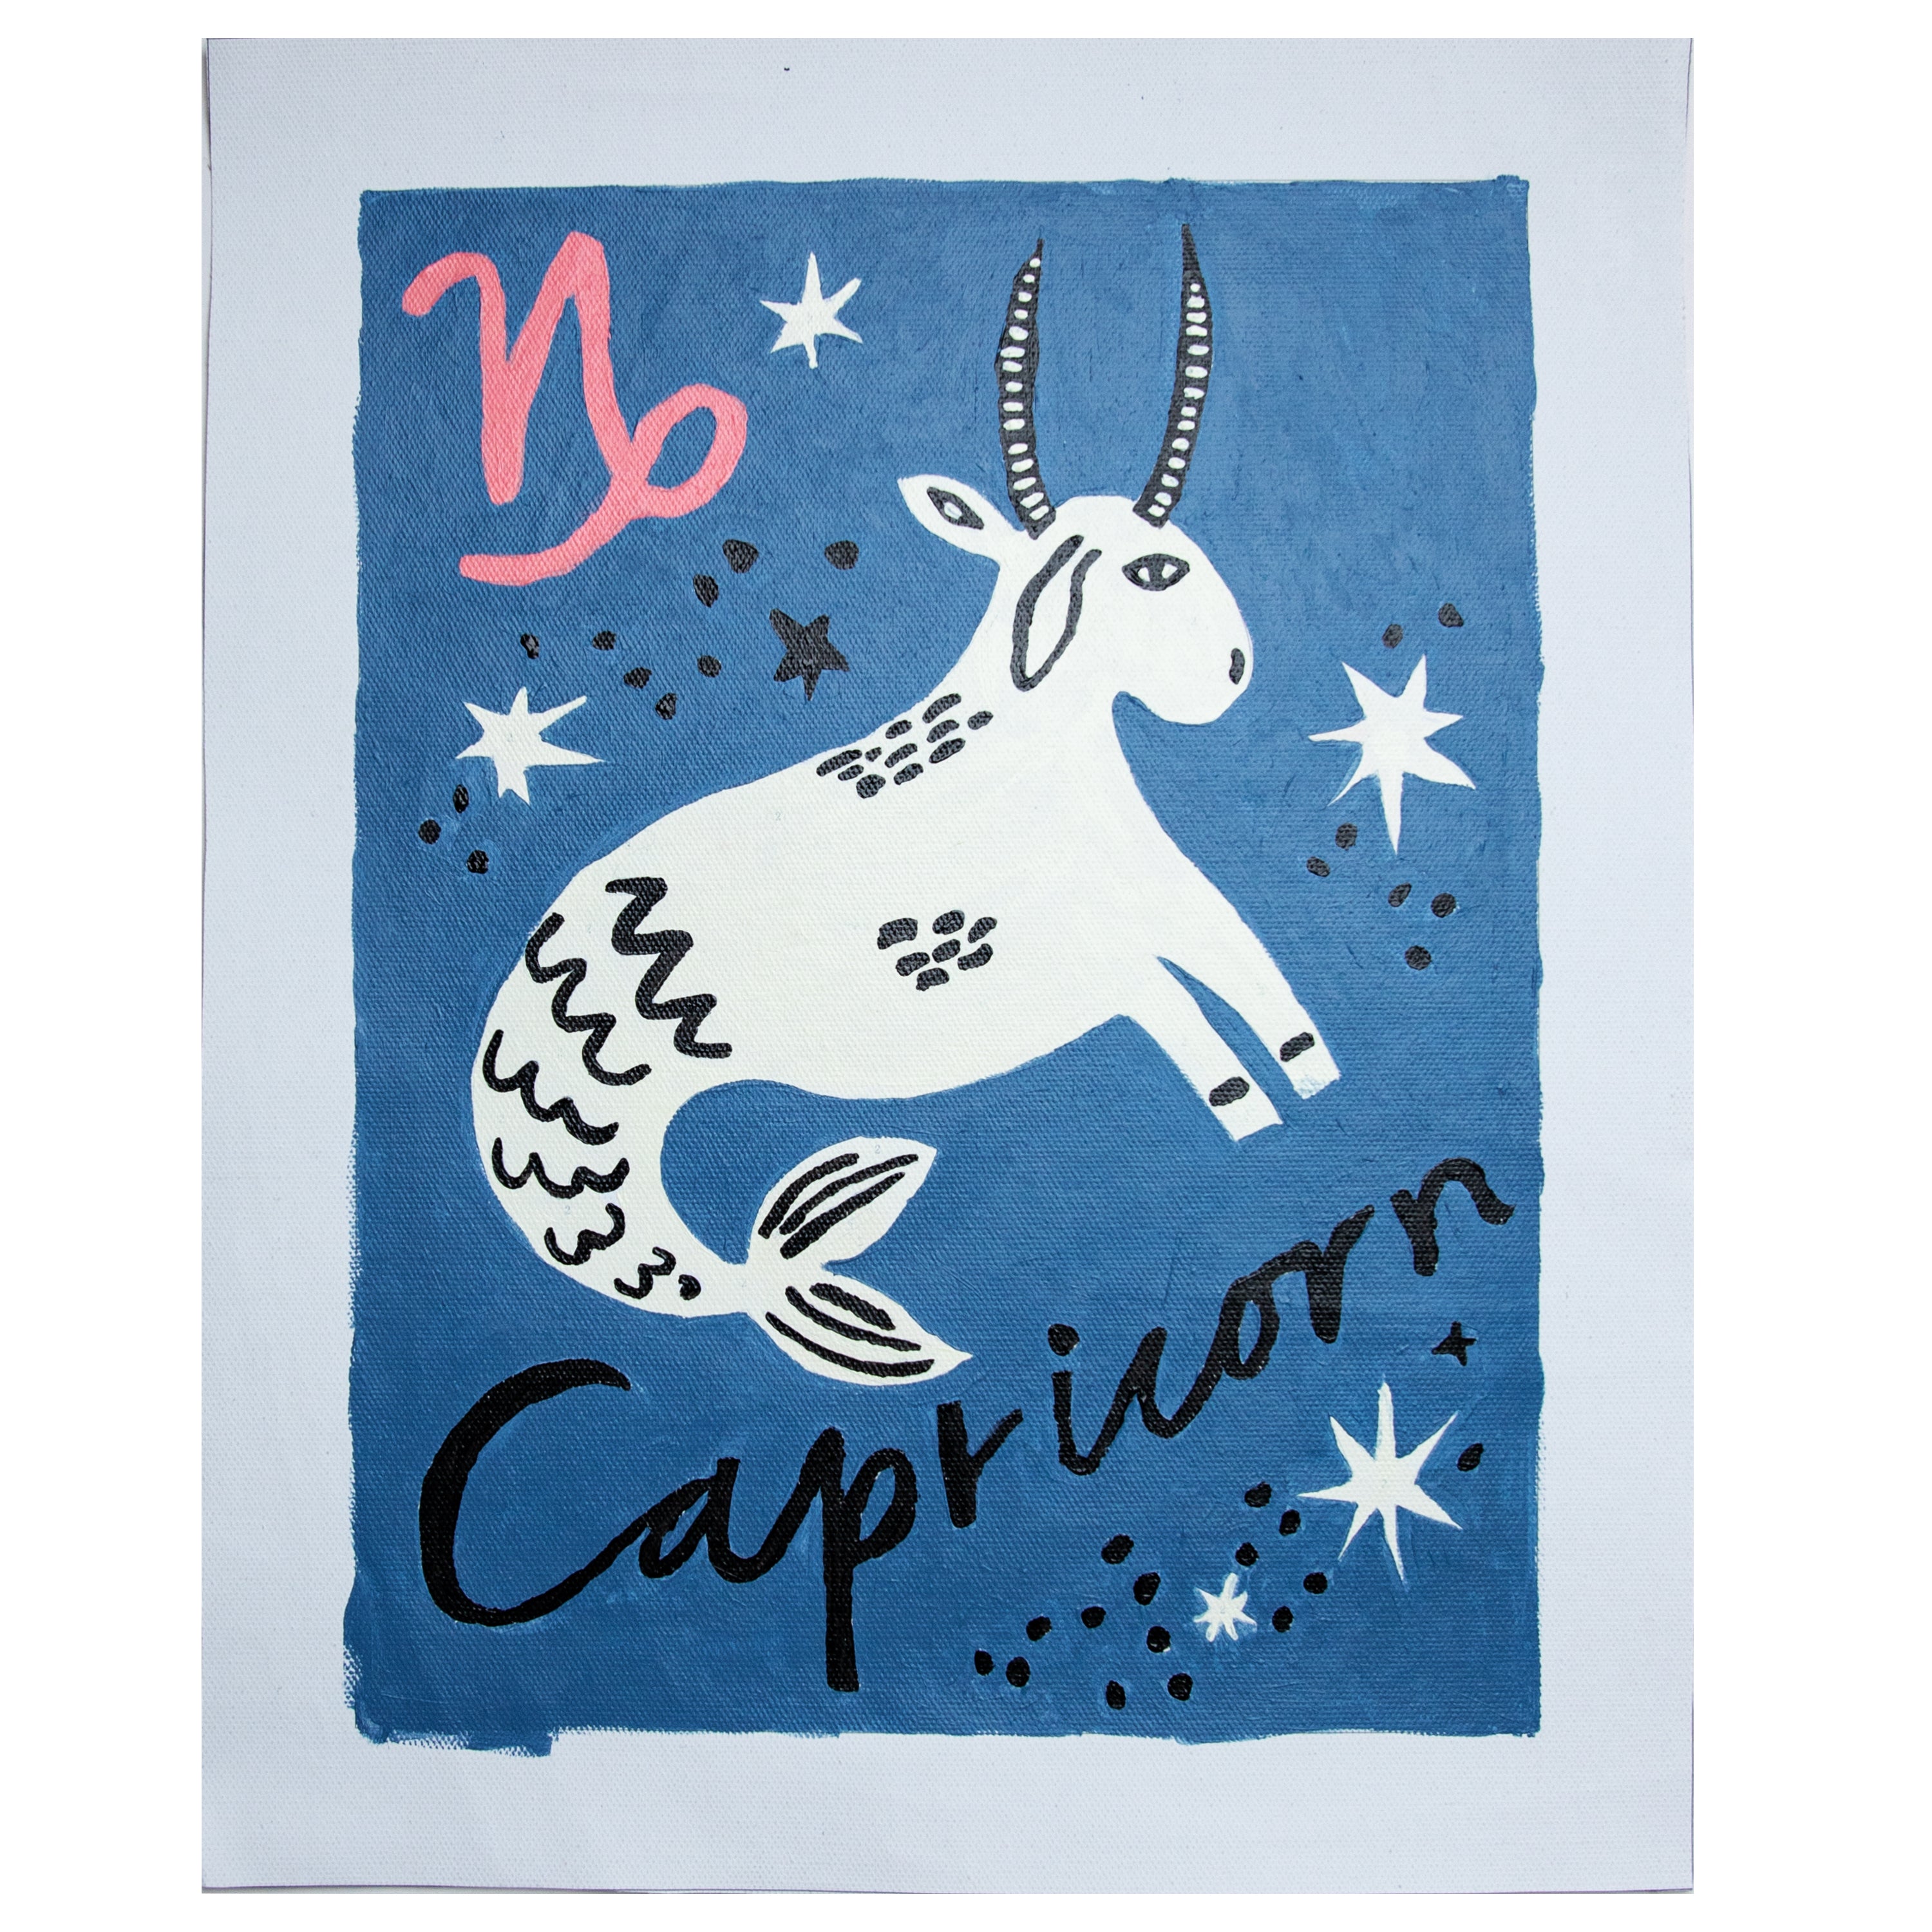 Special Edition Zodiac: Capricorn